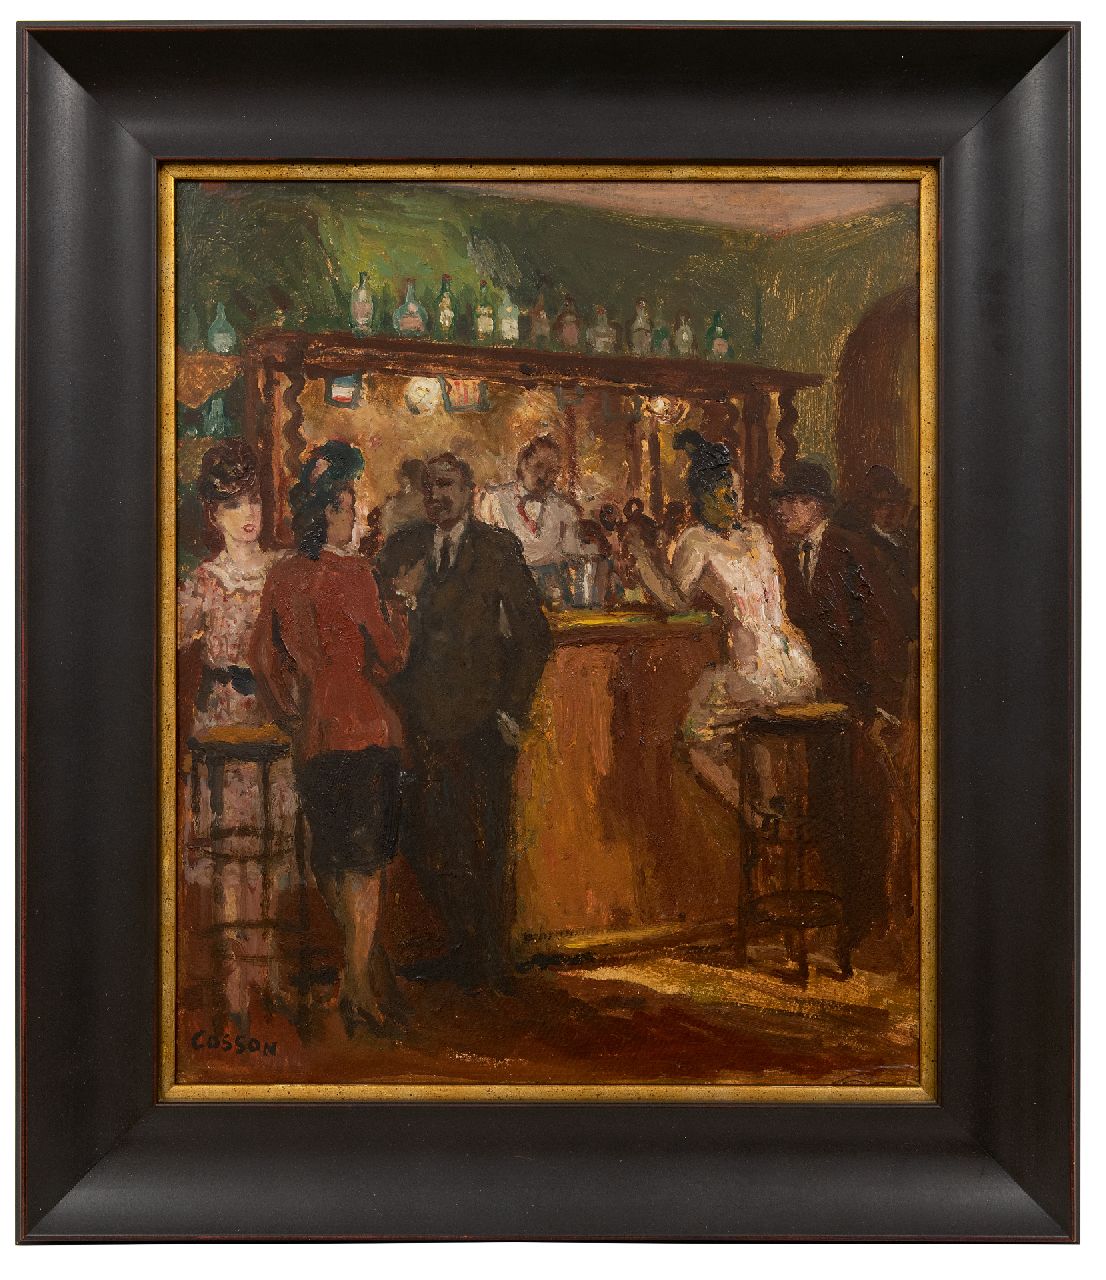 Cosson J.L.M.  | Jean Louis 'Marcel' Cosson | Schilderijen te koop aangeboden | Barscène, olieverf op board 46,0 x 38,0 cm, gesigneerd linksonder